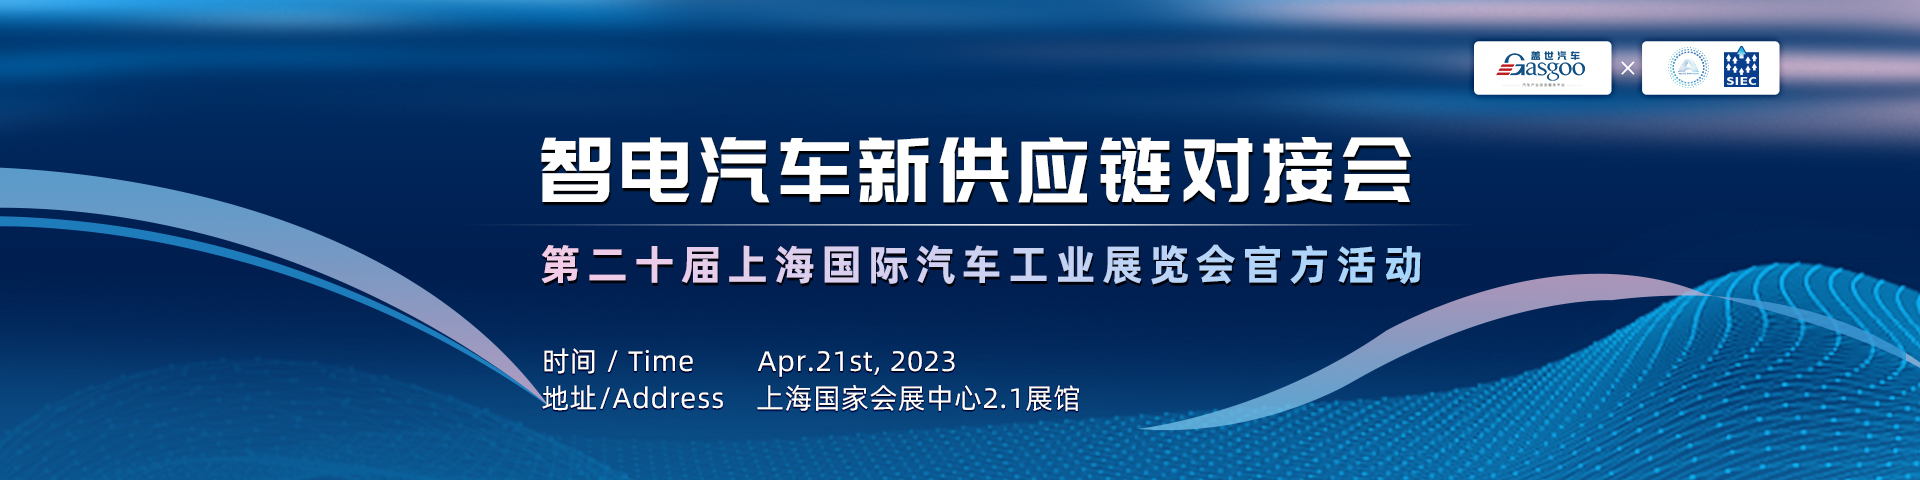 智电汽车新供应链对接会  第二十届上海国际汽车工业展览会官方活动